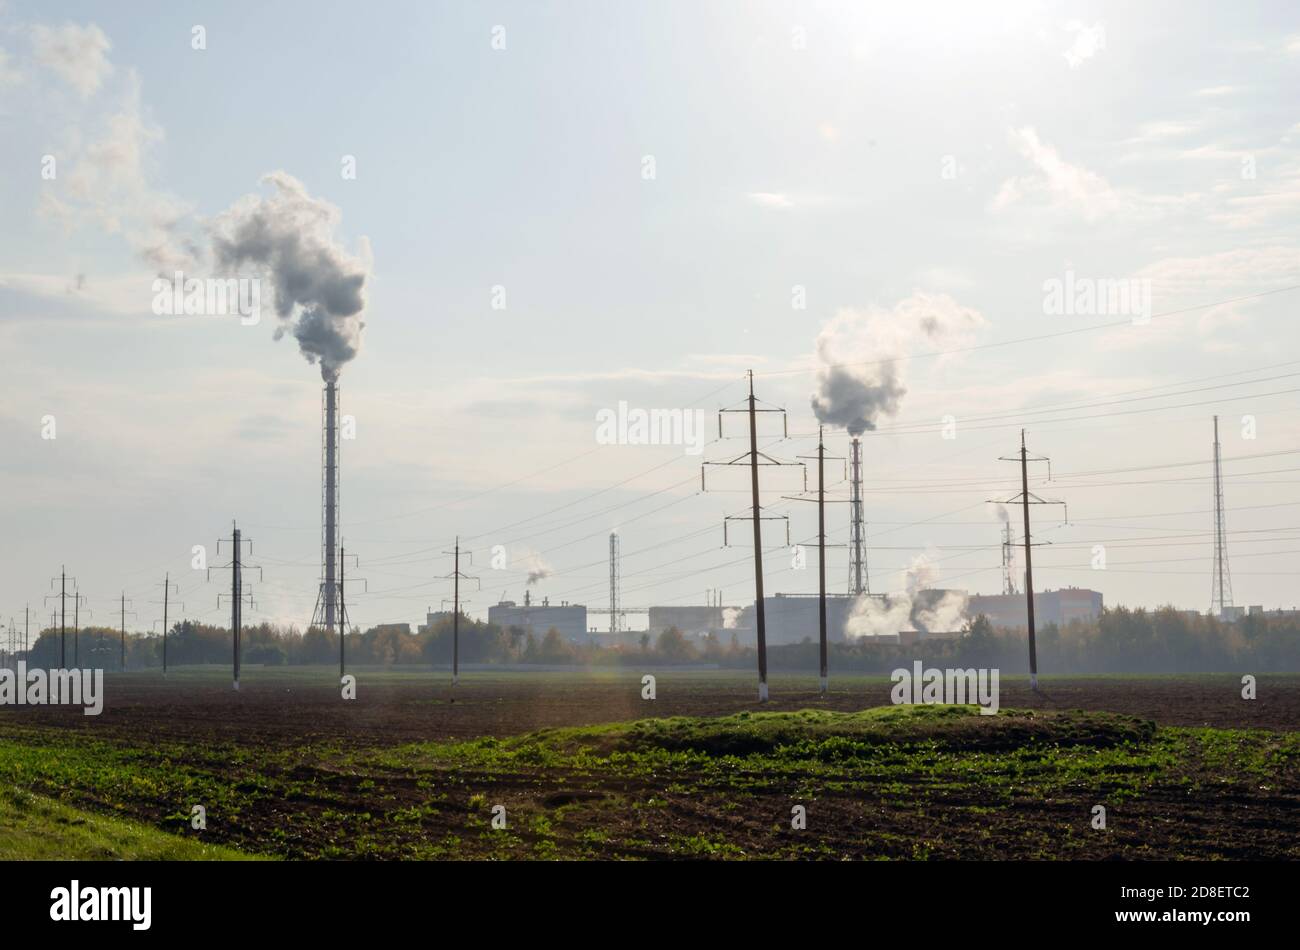 La planta emite humo y humo de las tuberías, y los contaminantes entran en la atmósfera. Desastre ambiental. Emisiones nocivas a la atmósfera. Chemi Foto de stock